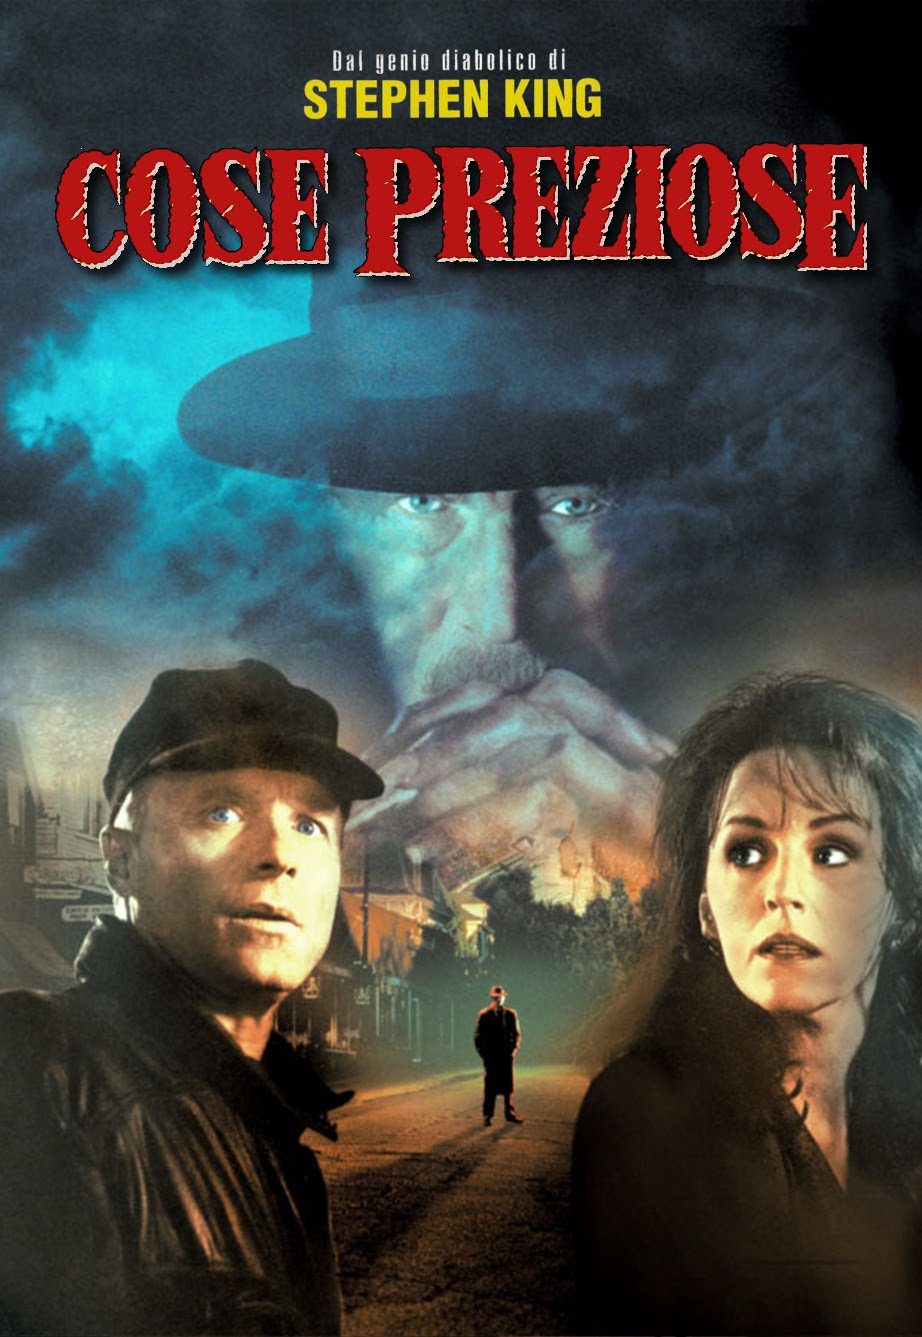 Cose preziose [HD] (1993) Streaming - FILM GRATIS by CB01.UNO